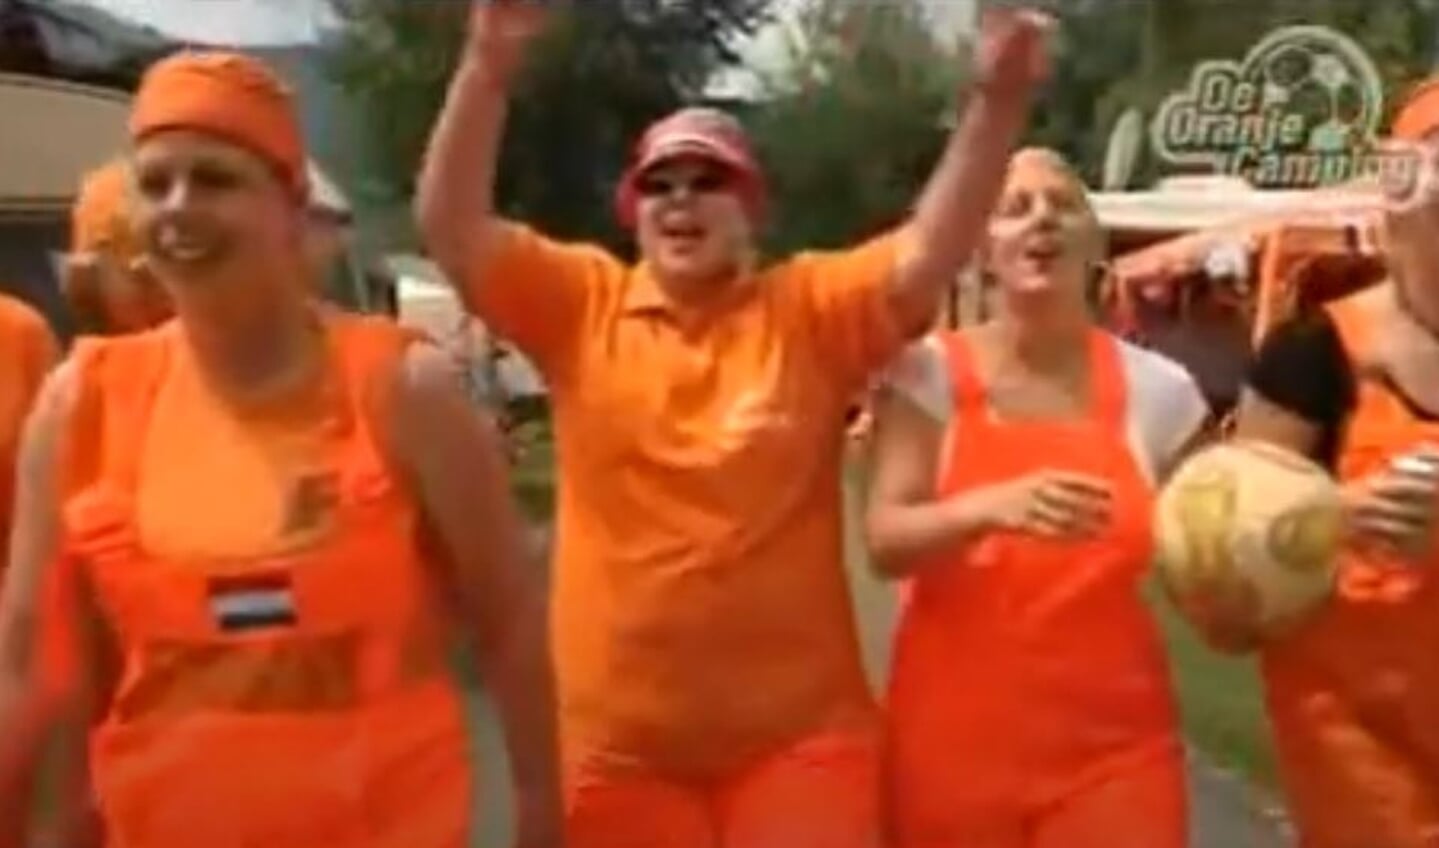 De Oranjecamping was een van de items tijdens een WK talkshow over het Nederlands elftal.